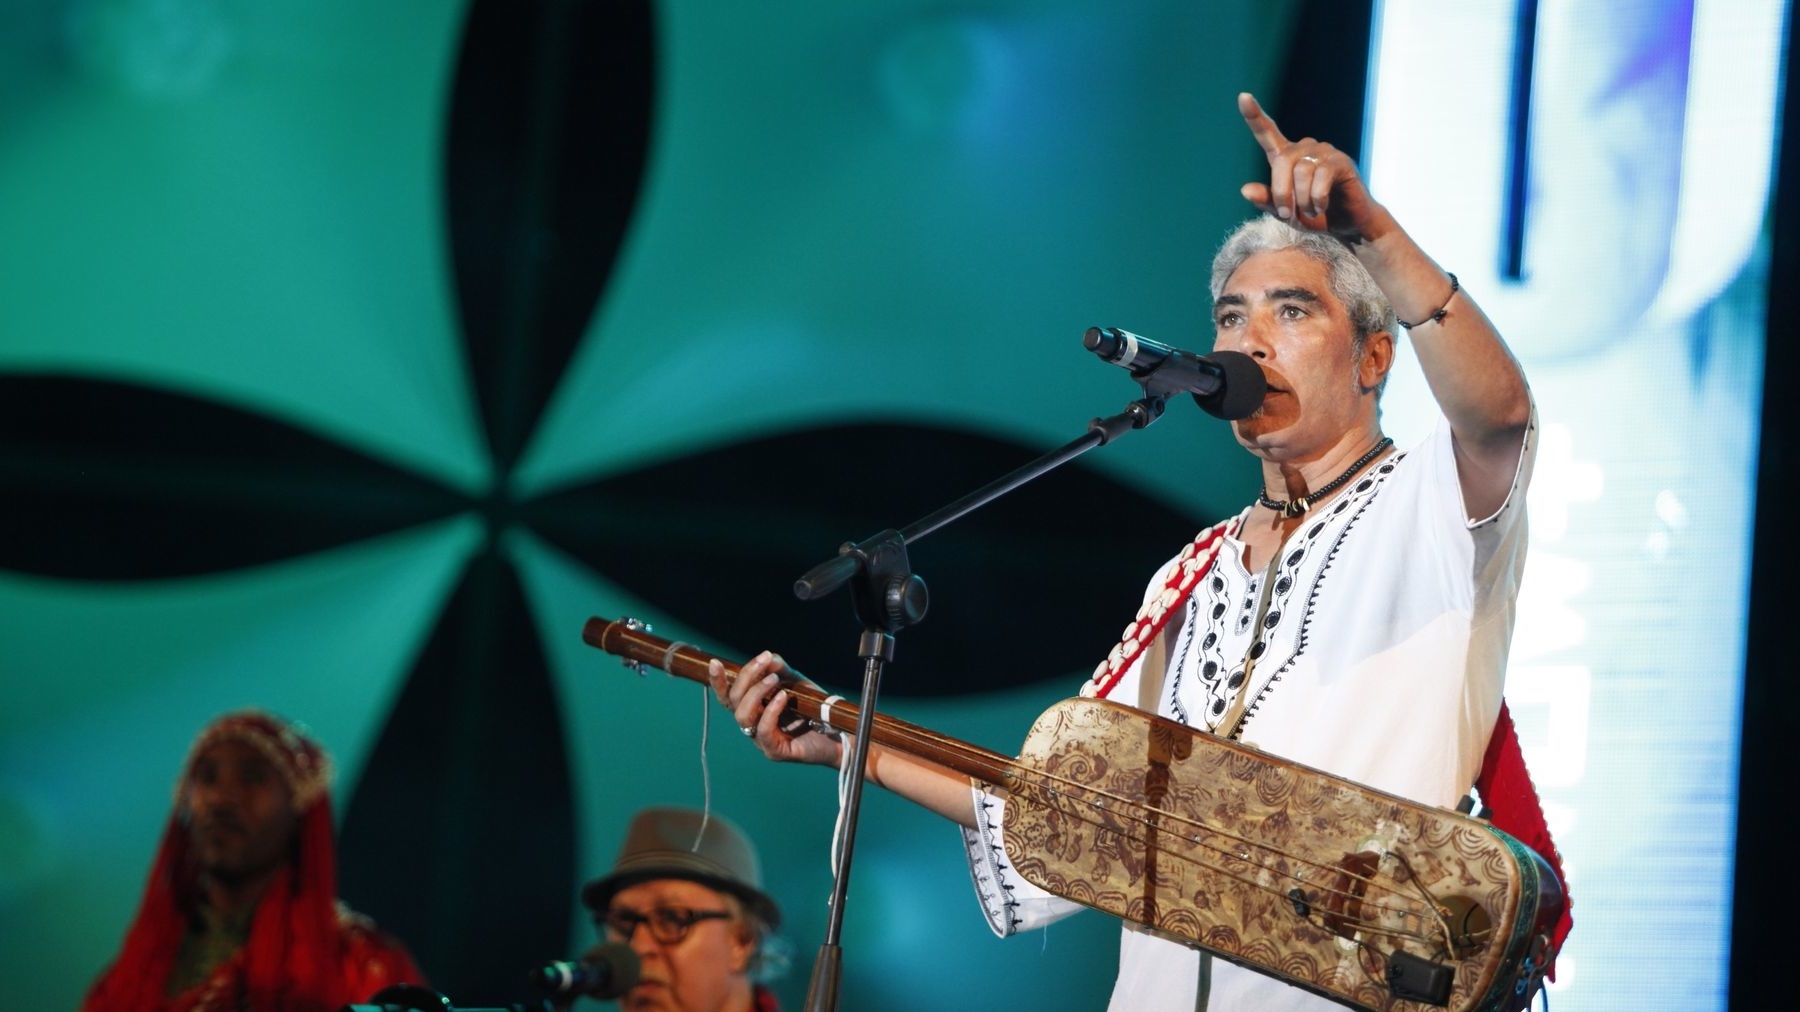 Les Rolling Stones de l'Afrique clôturent les festivités à Agadir
